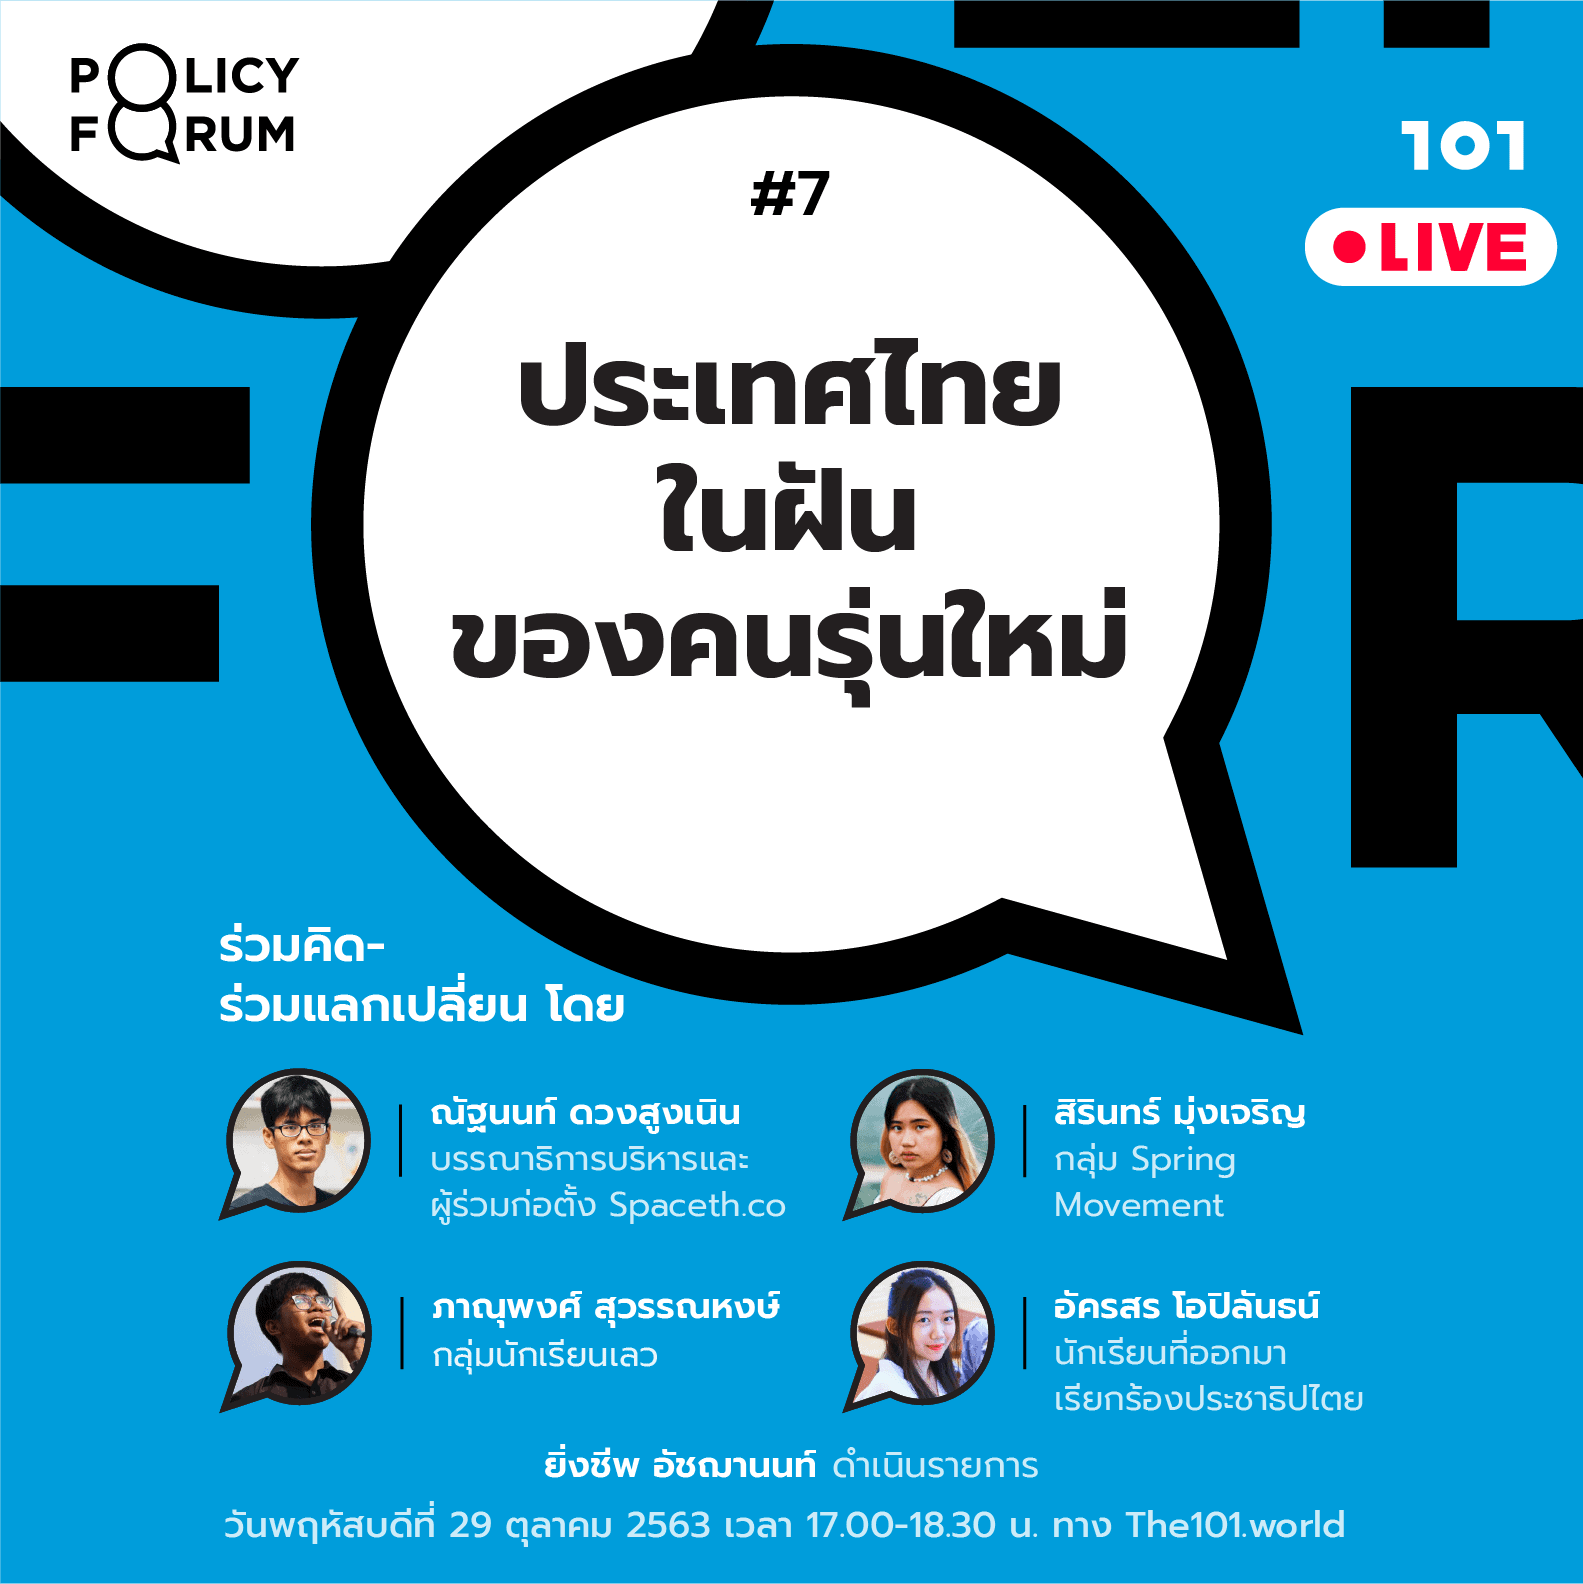 101 Policy Forum #7 : ประเทศไทยในฝันของคนรุ่นใหม่